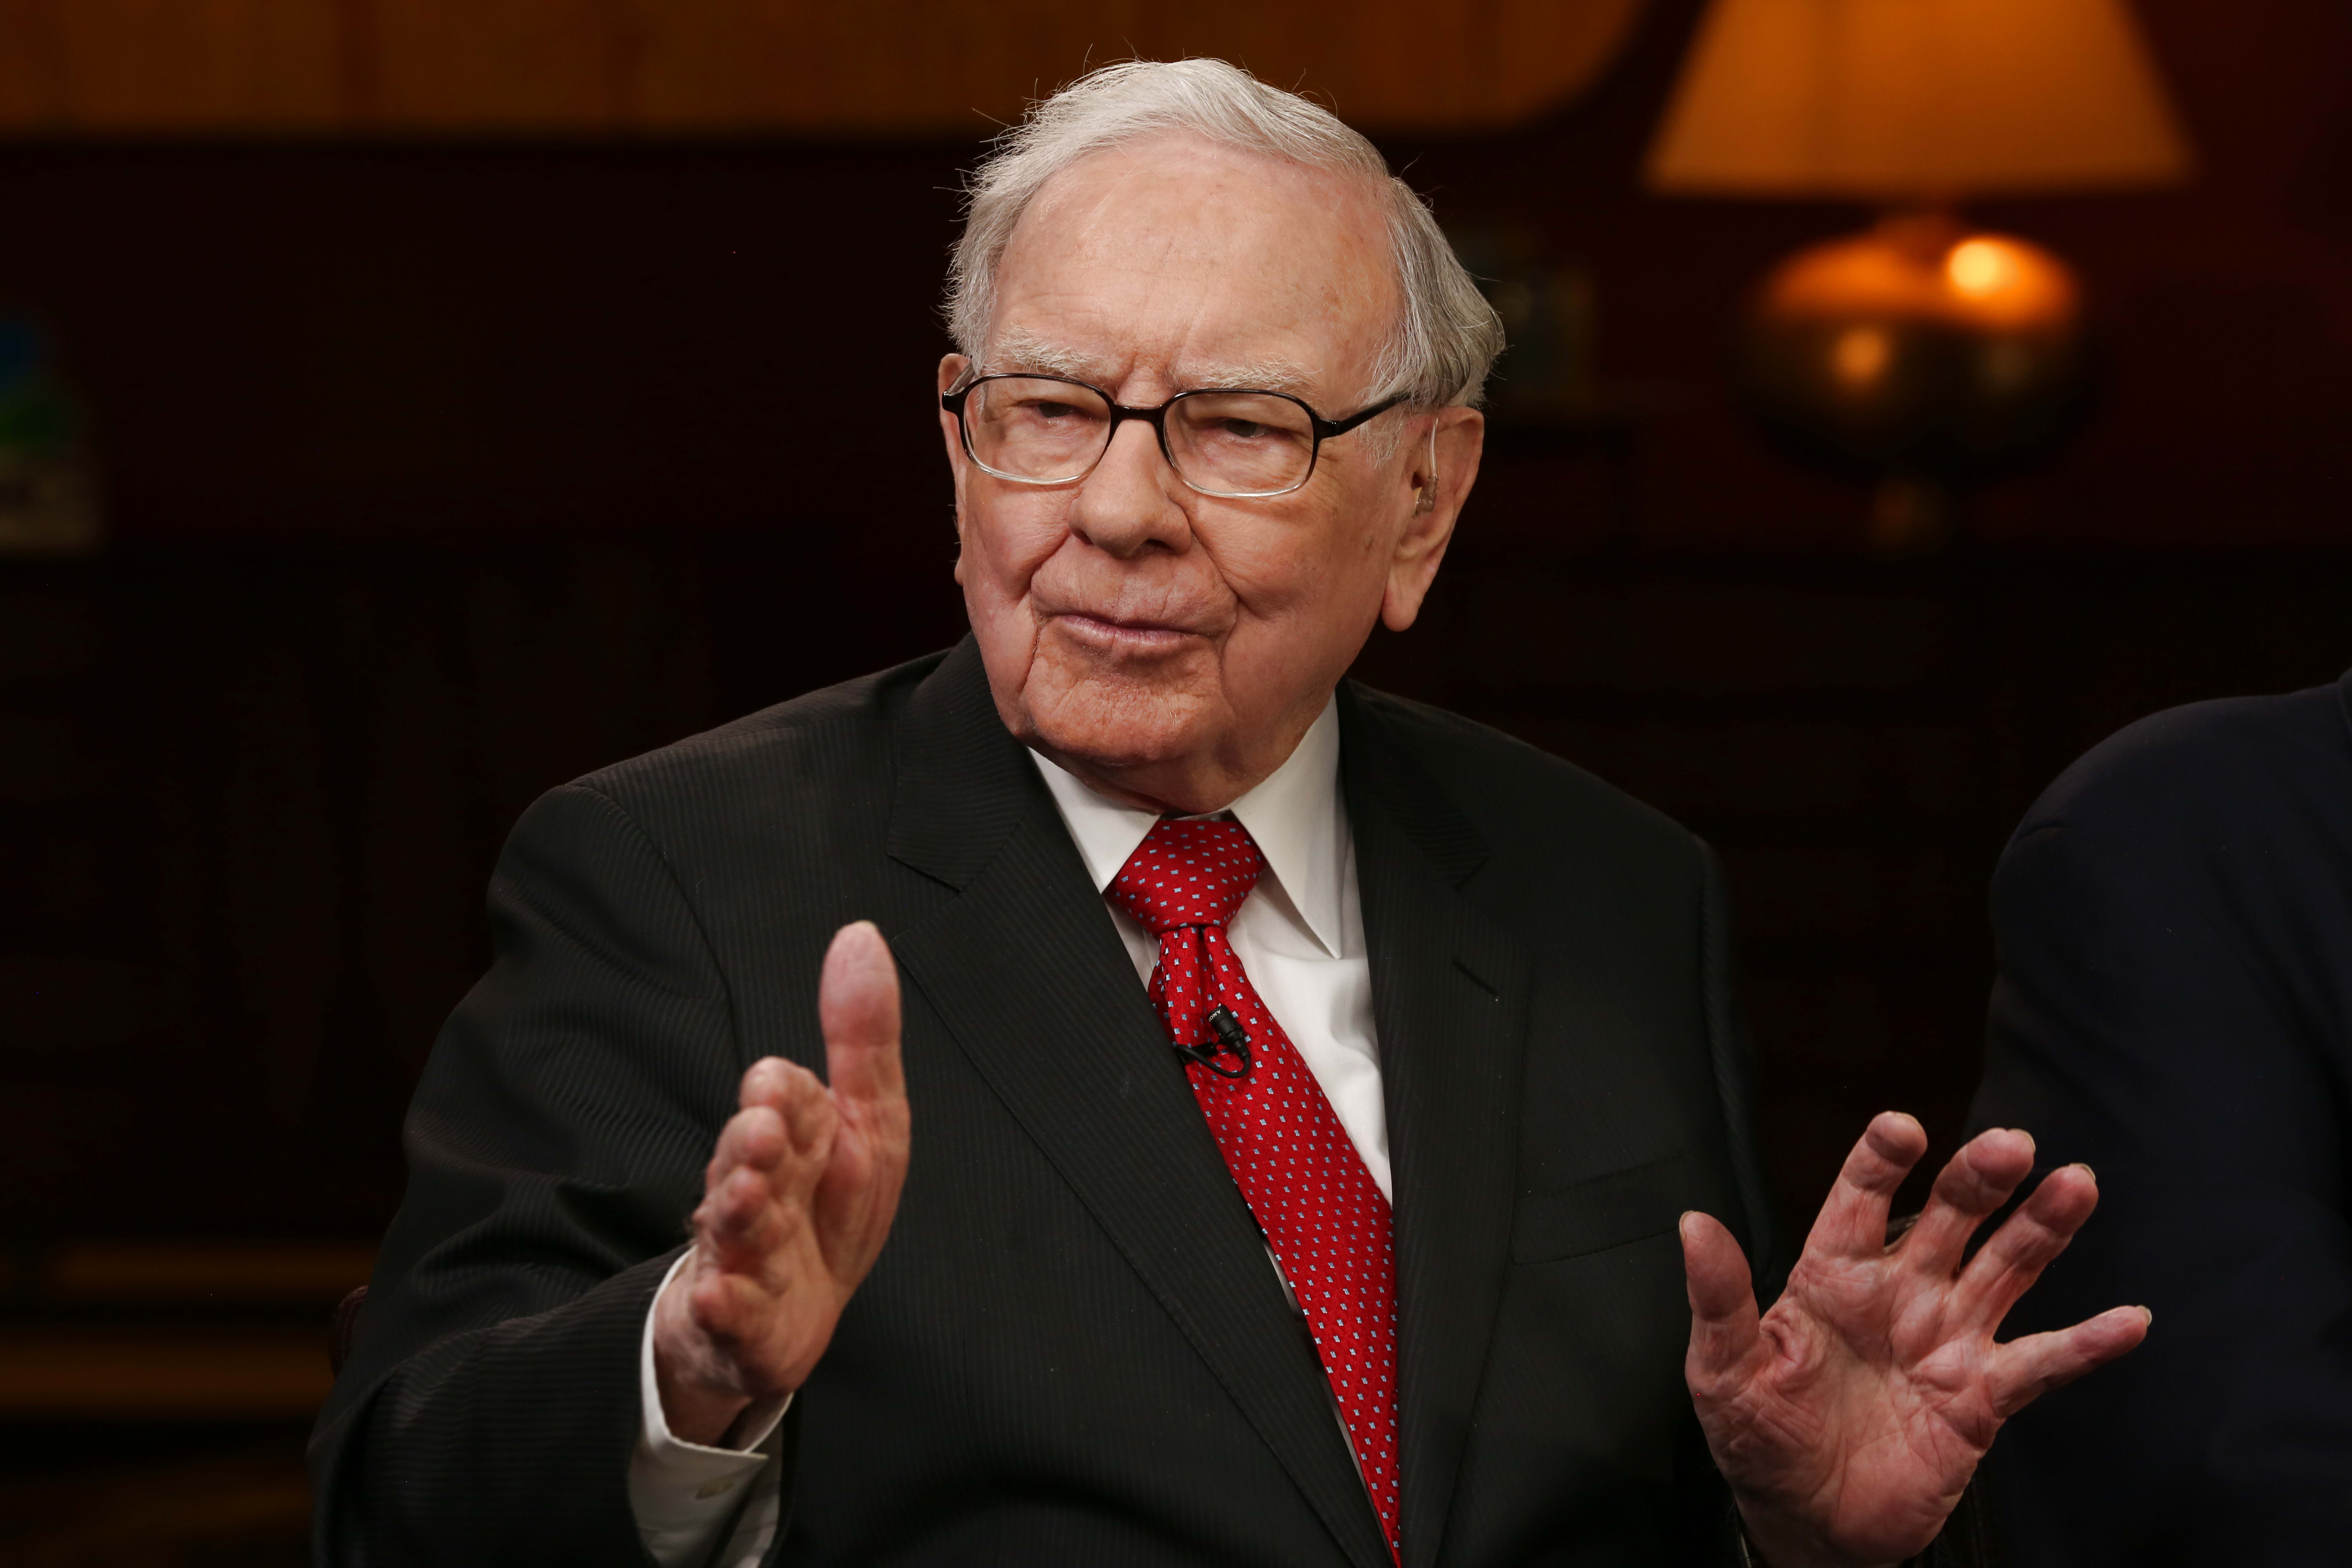 Warren Buffett has $128 billion in money to burn